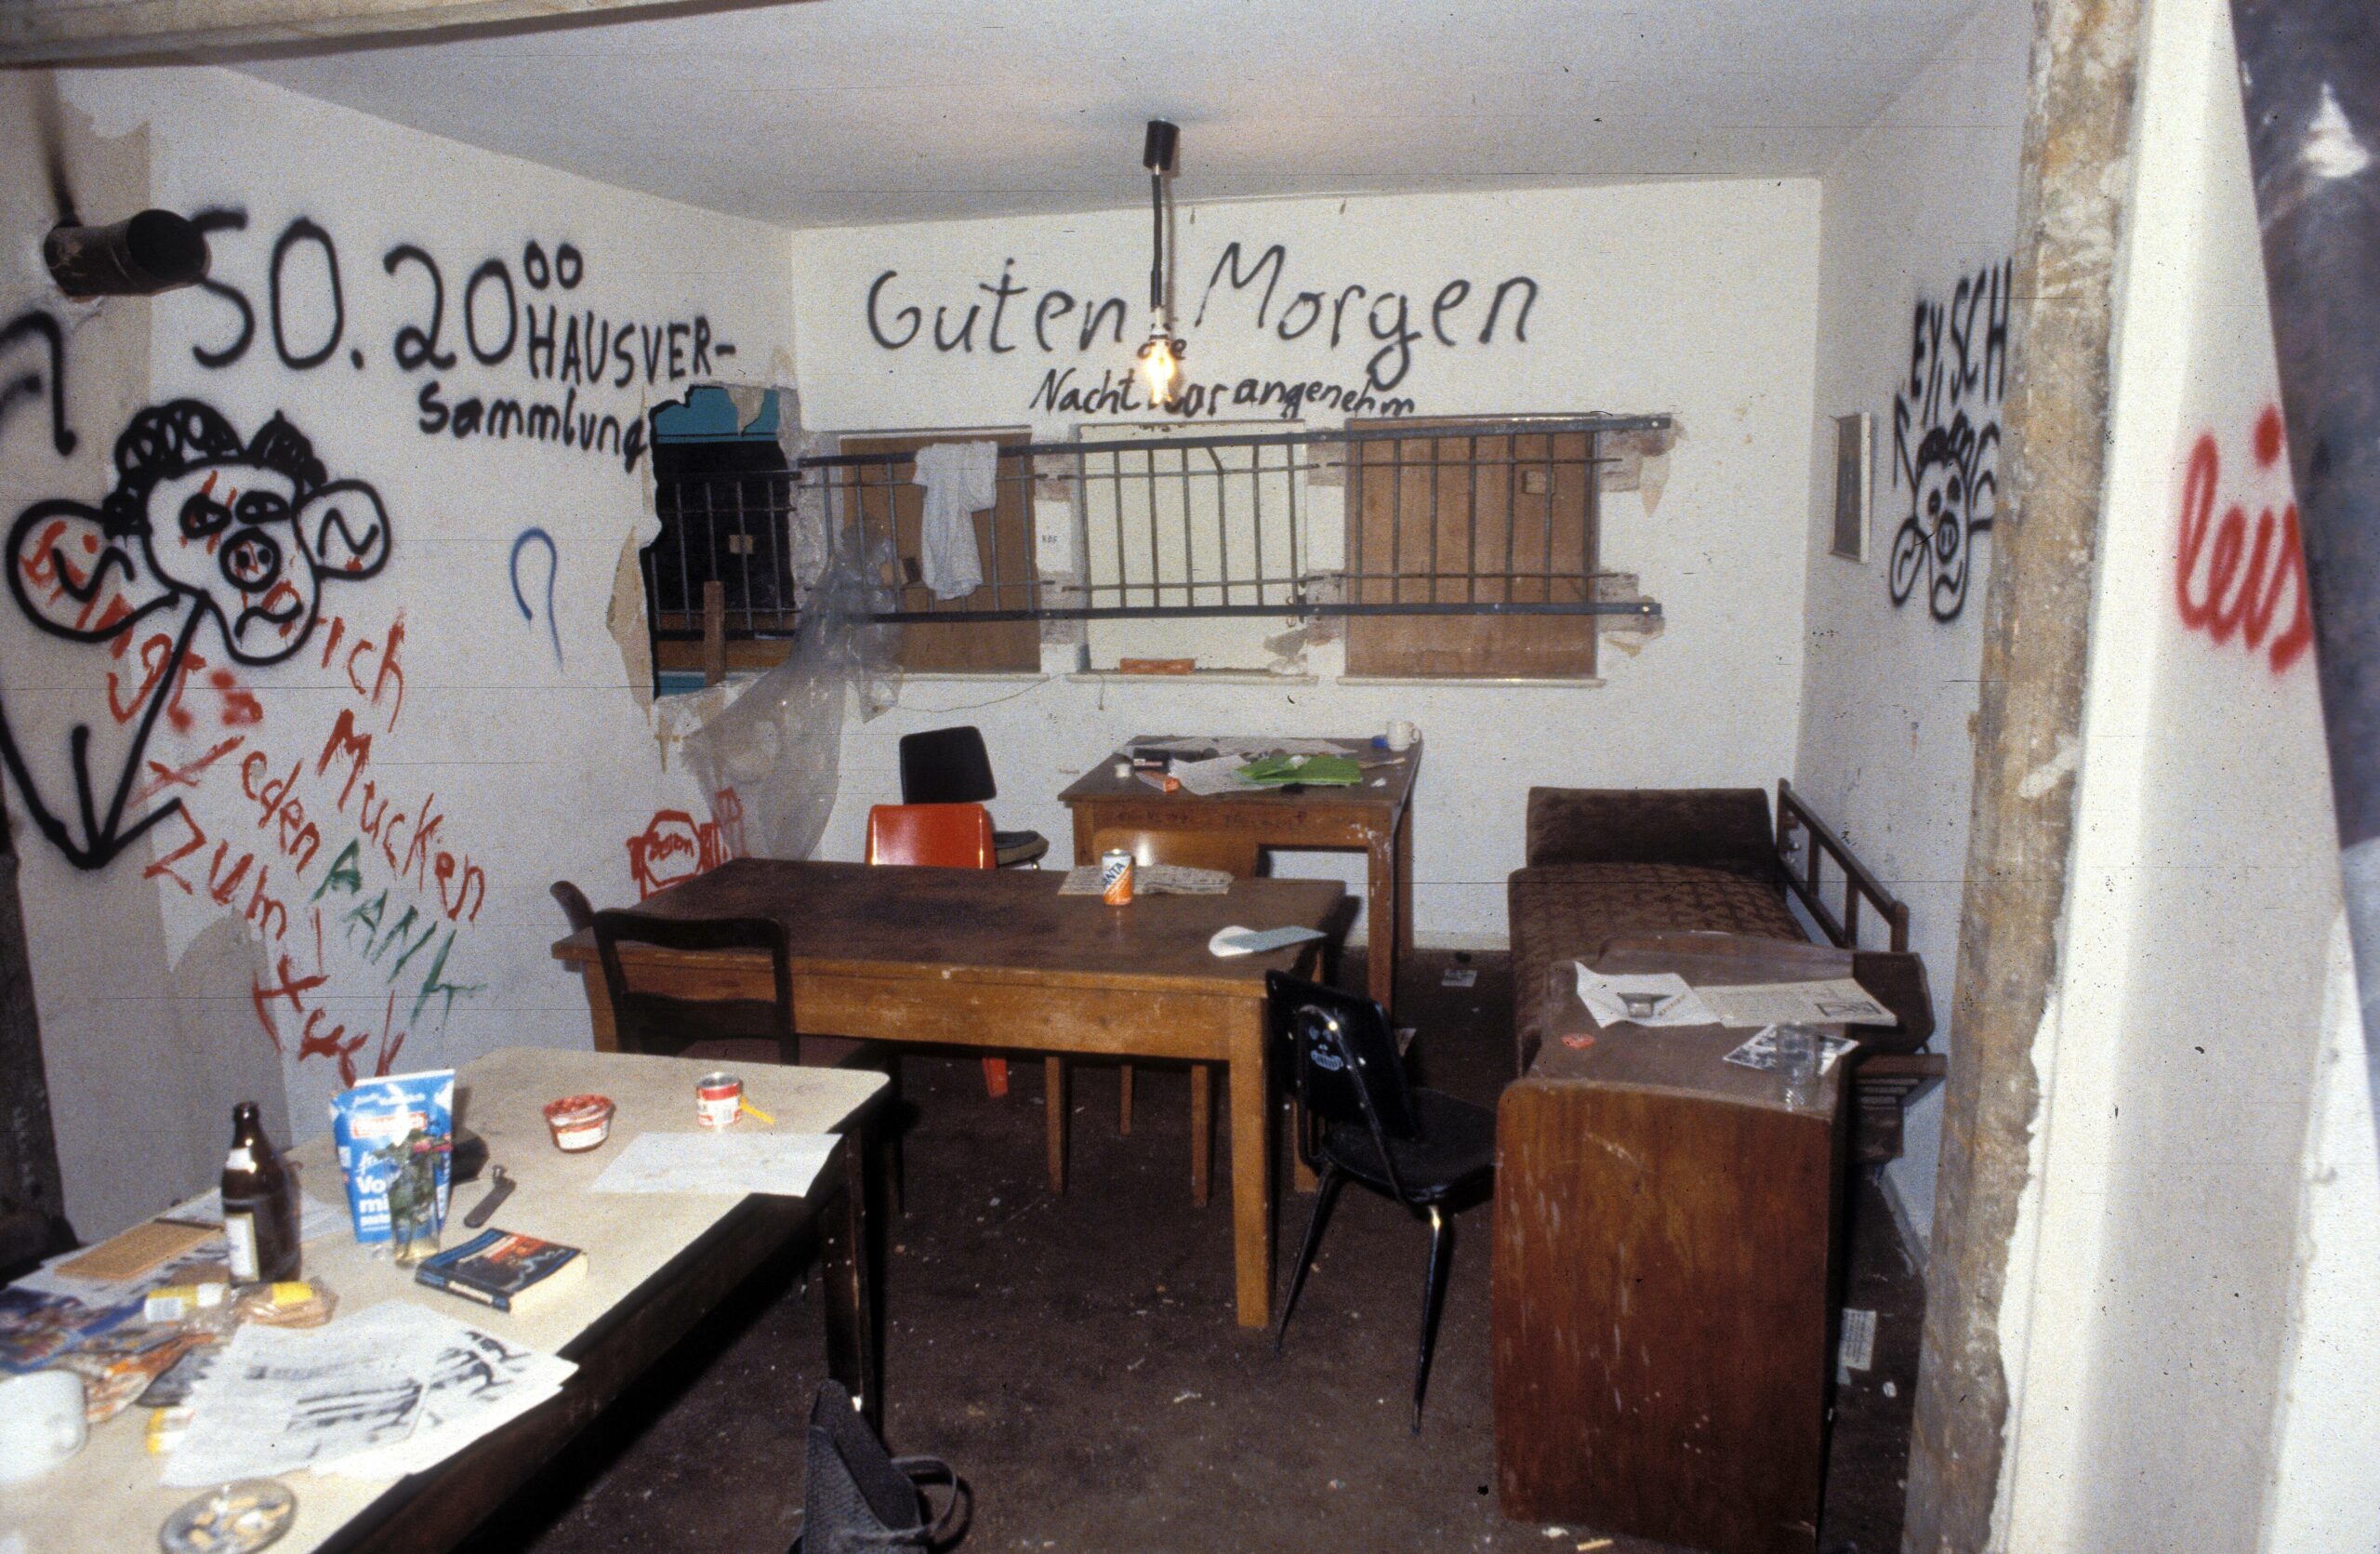 Besetzte Wohnung in einem Haus in der Kreuzberger Waldemarstraße, 1983. Foto: Imago/Teutopress